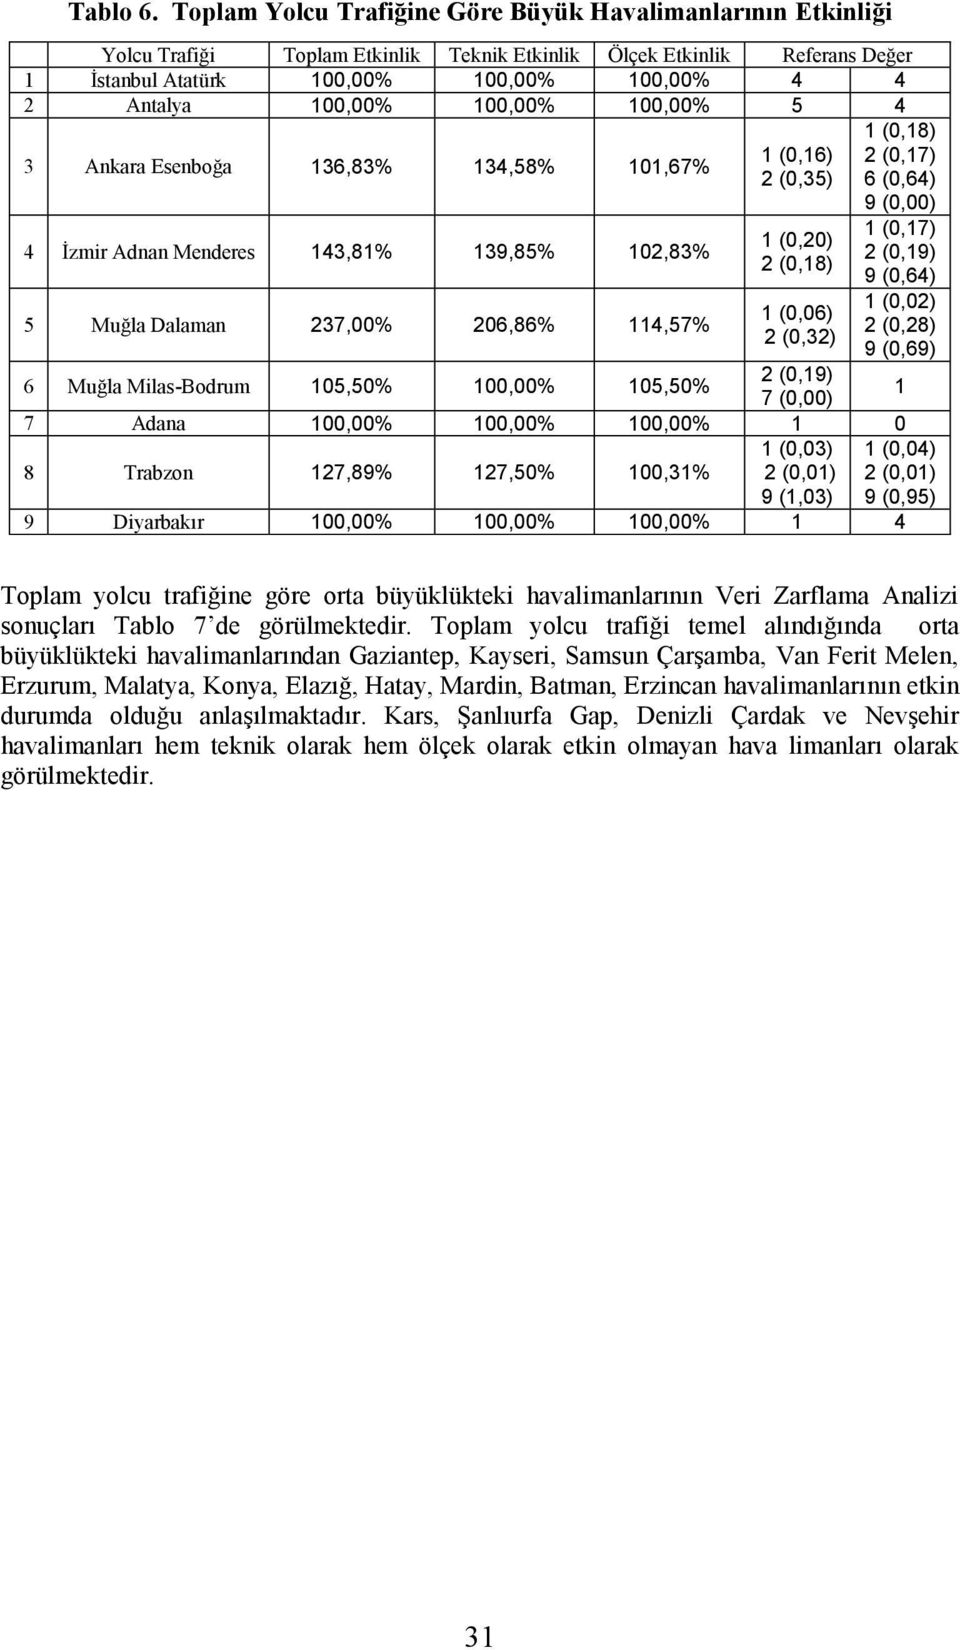 Ankara Esenboğa 136,83% 134,58% 11,67% 4 İzmir Adnan Menderes 143,81% 139,85% 12,83% 5 Muğla Dalaman 237,% 26,86% 114,57% 1 (,16) 2 (,35) 1 (,2) 2 (,18) 1 (,6) 2 (,32) 1 (,18) 2 (,17) 6 (,64) 9 (,) 1